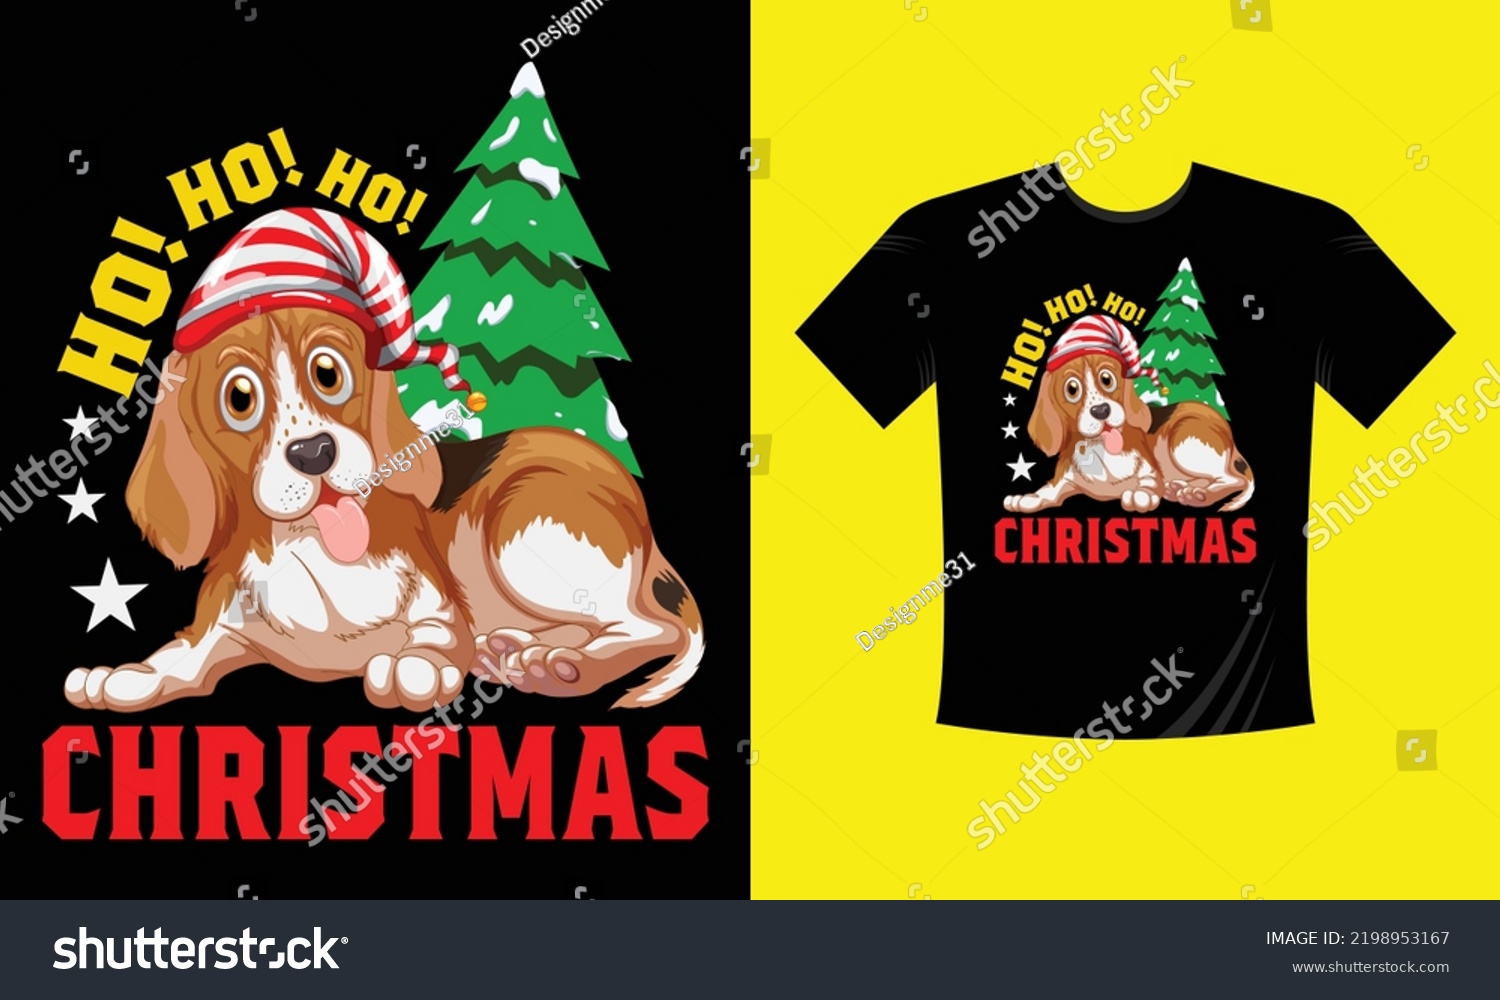 SVG of ho ho ho Christmas t shirt design free vector svg design template  svg